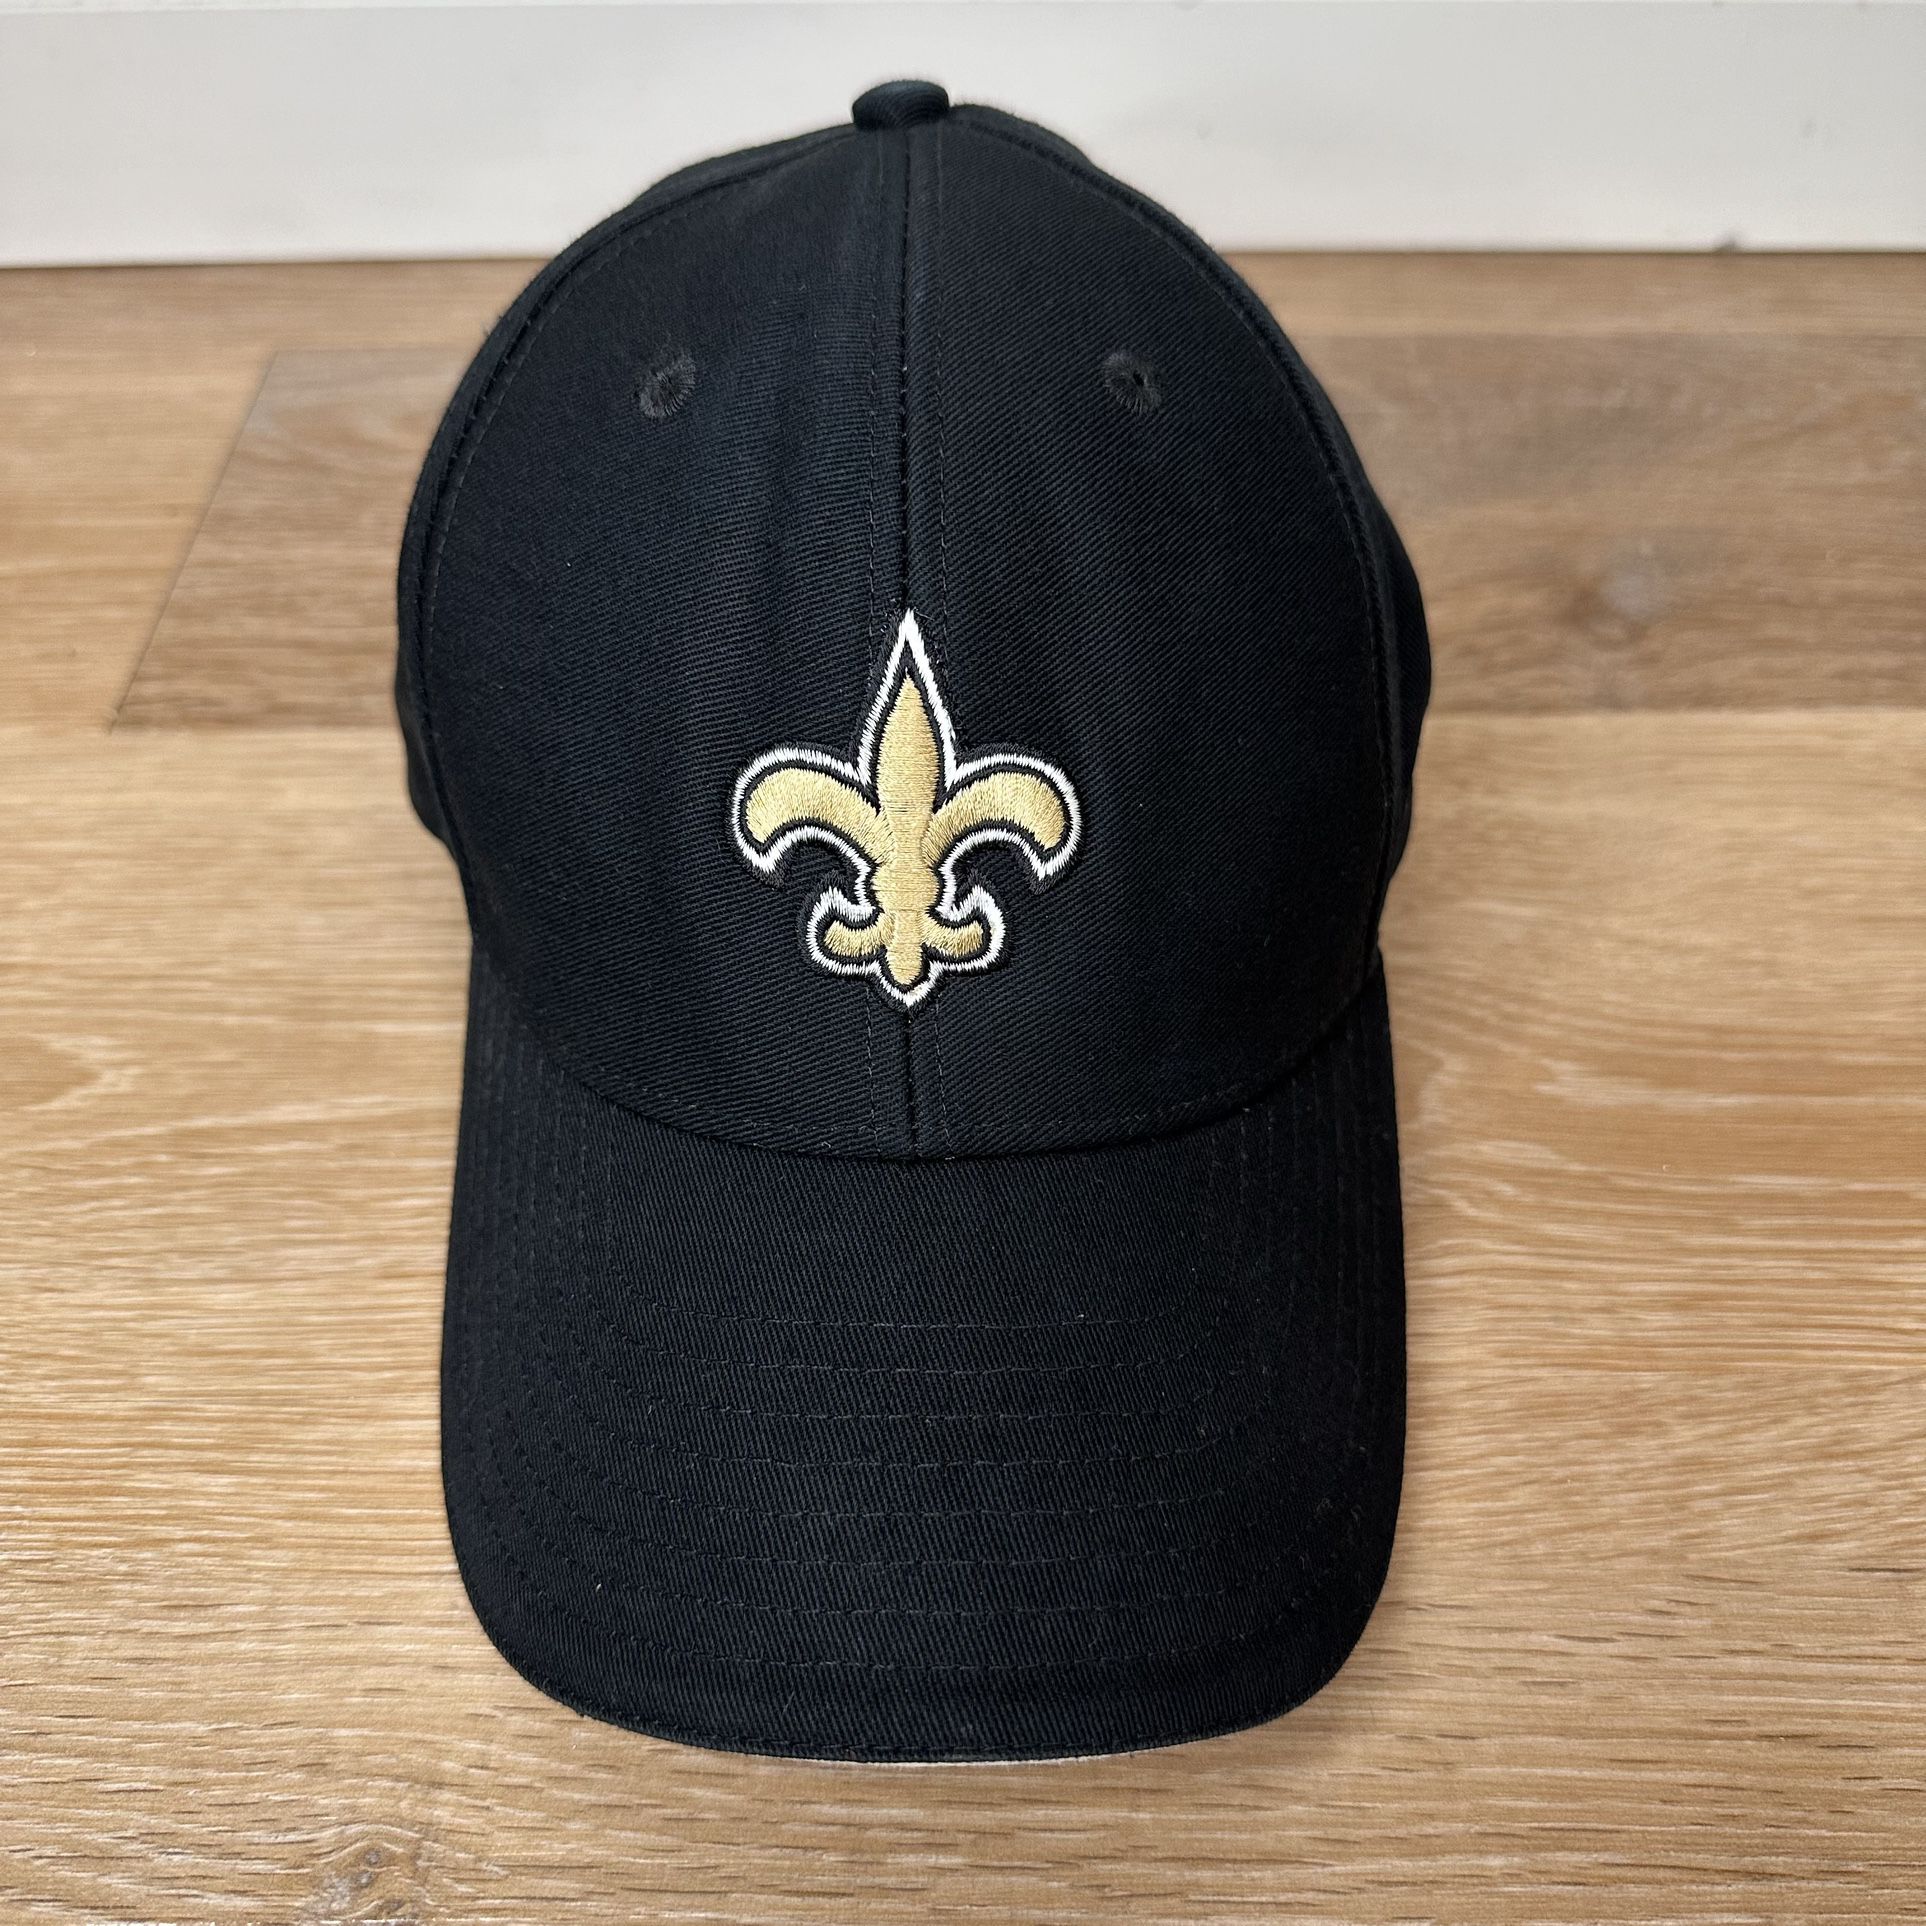 Reebok New Orleans Saints Unisex Black Adjustable Hat